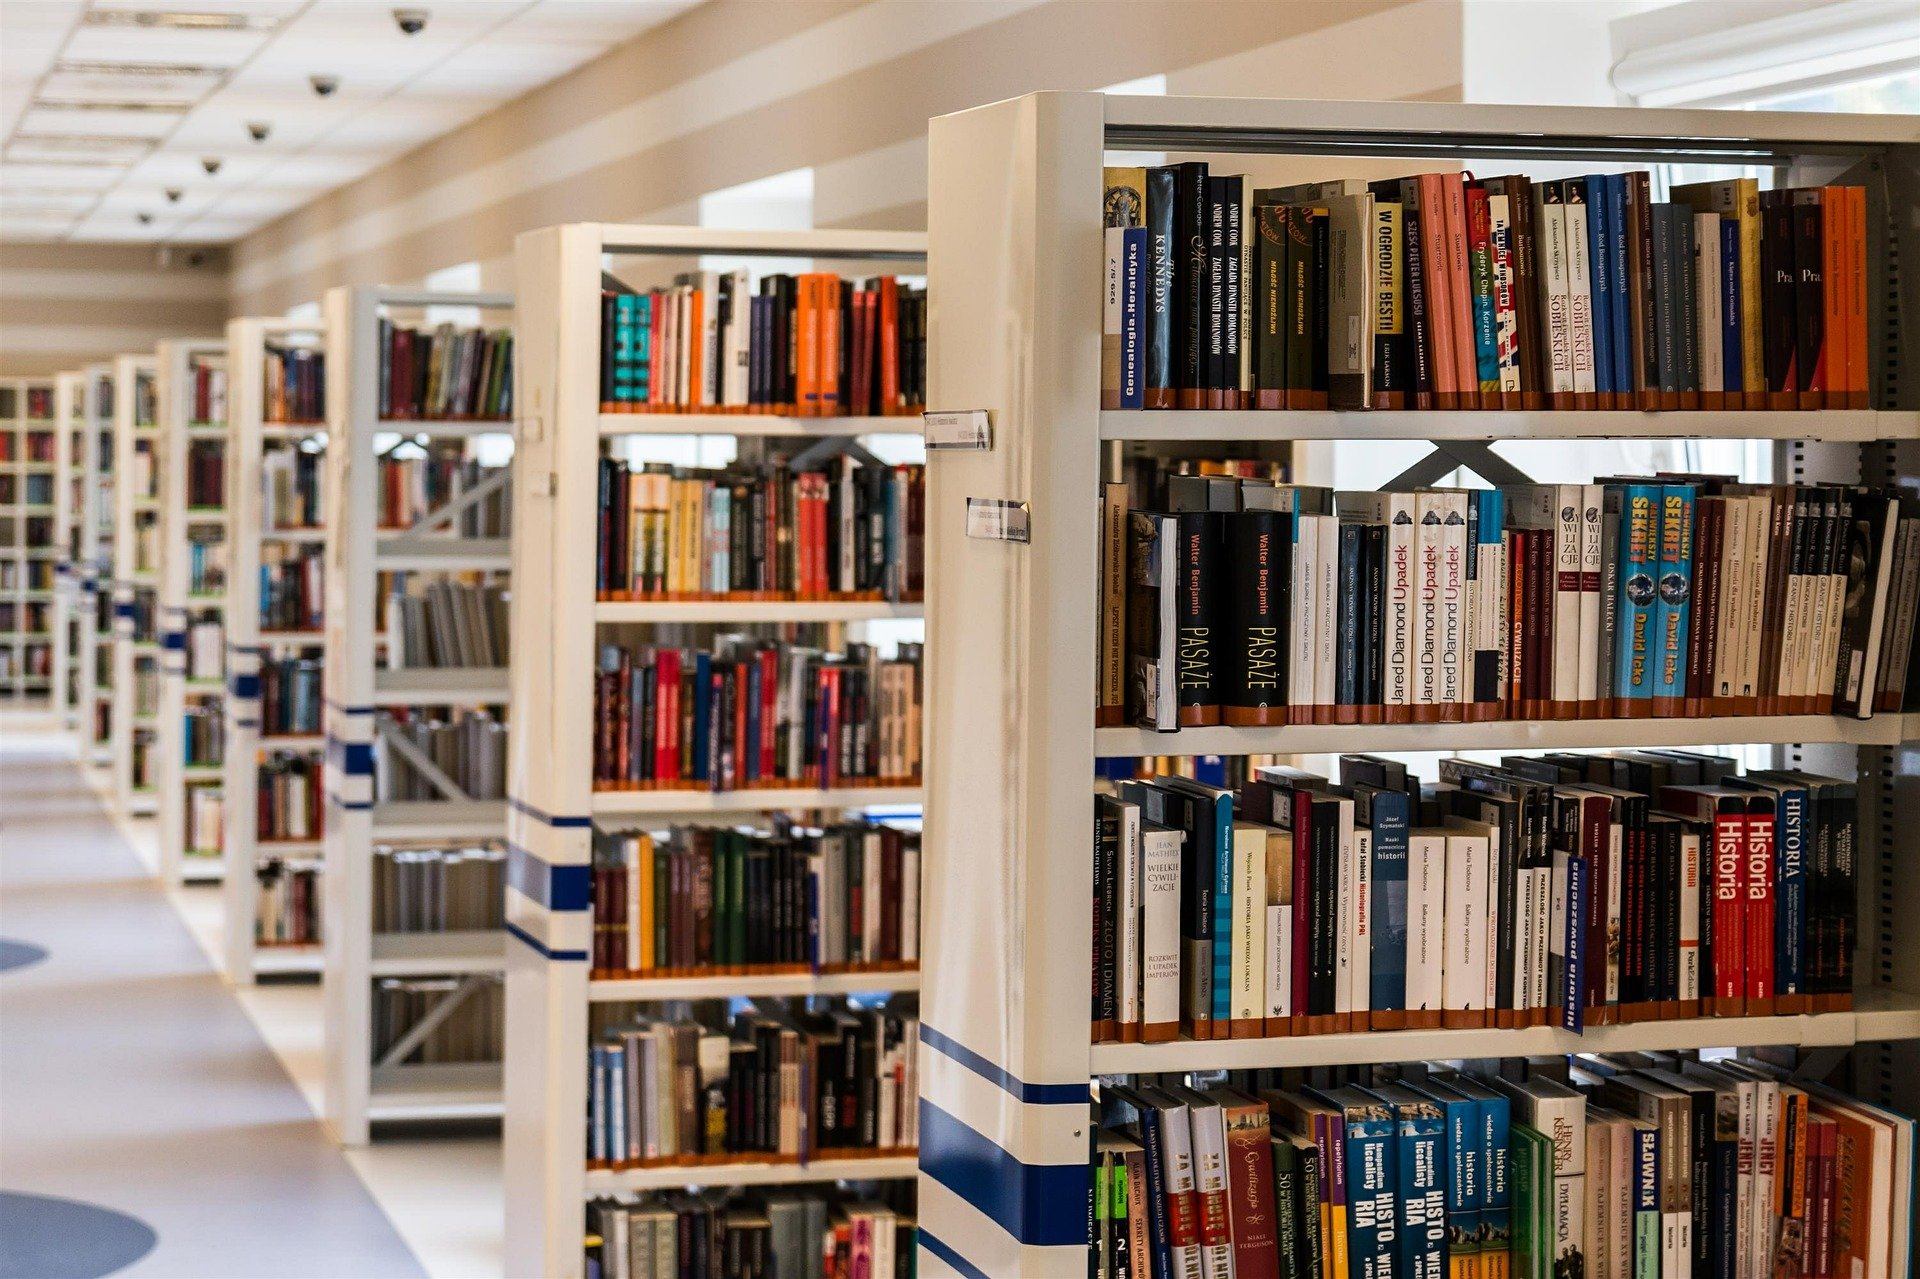 USR PLUS vrea gratuitate pentru studenți în bibliotecile central universitare. Ce taxe sunt percepute în prezent